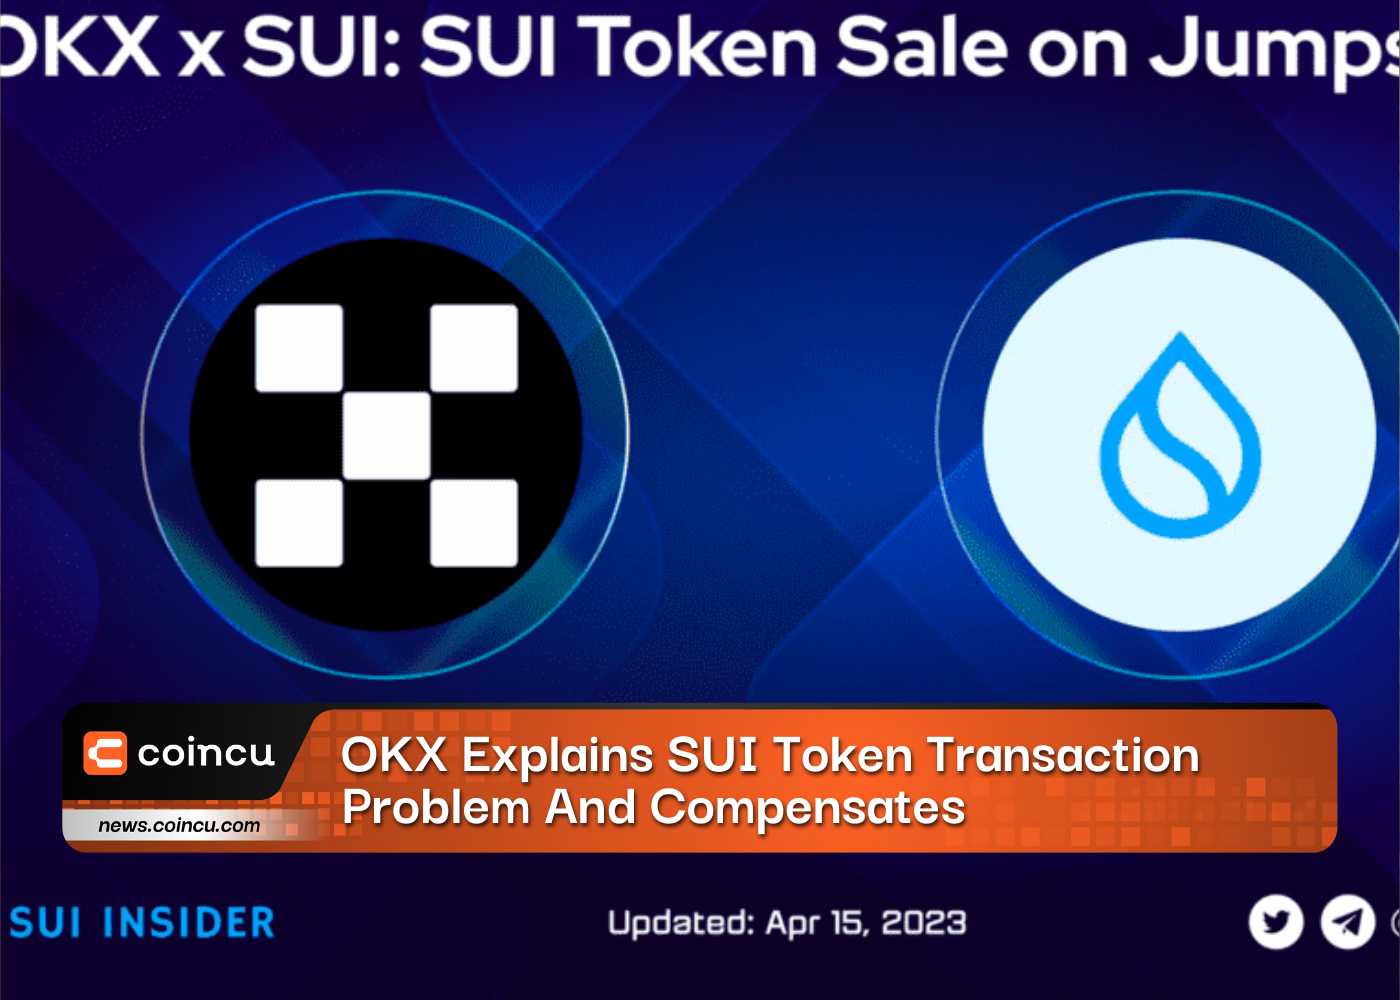 OKX Explains SUI Token Transaction Problem And Compensates